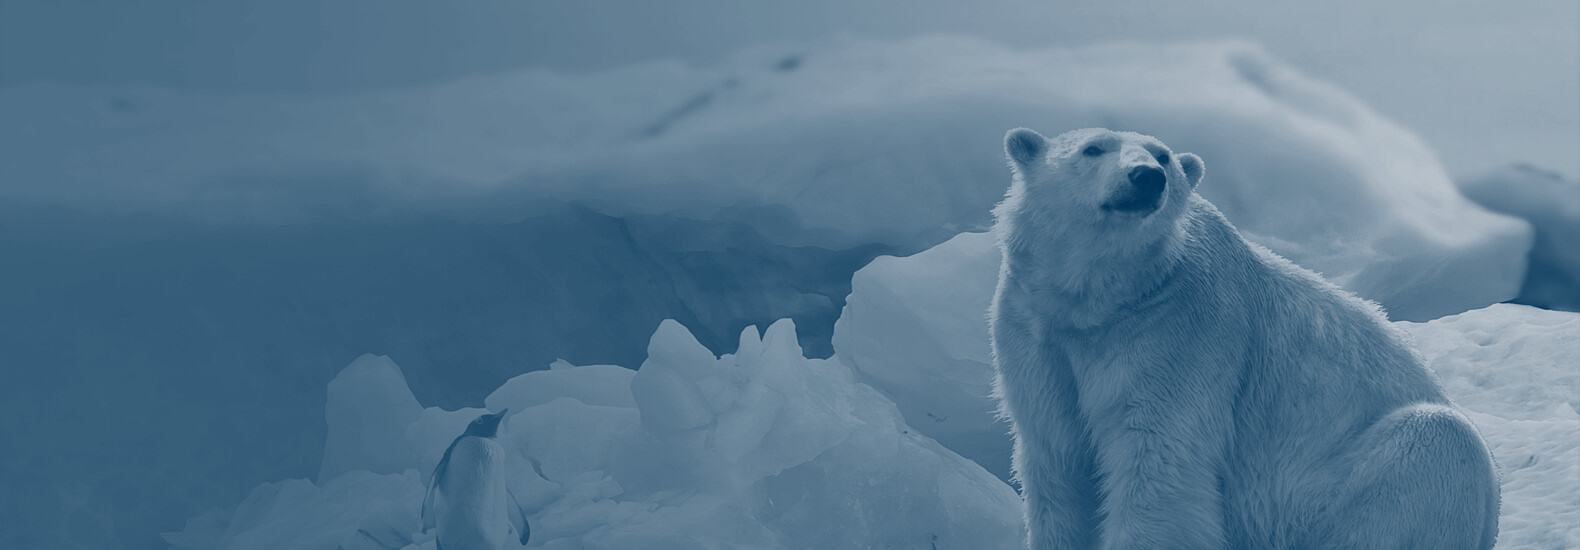 polar bear on ice cap